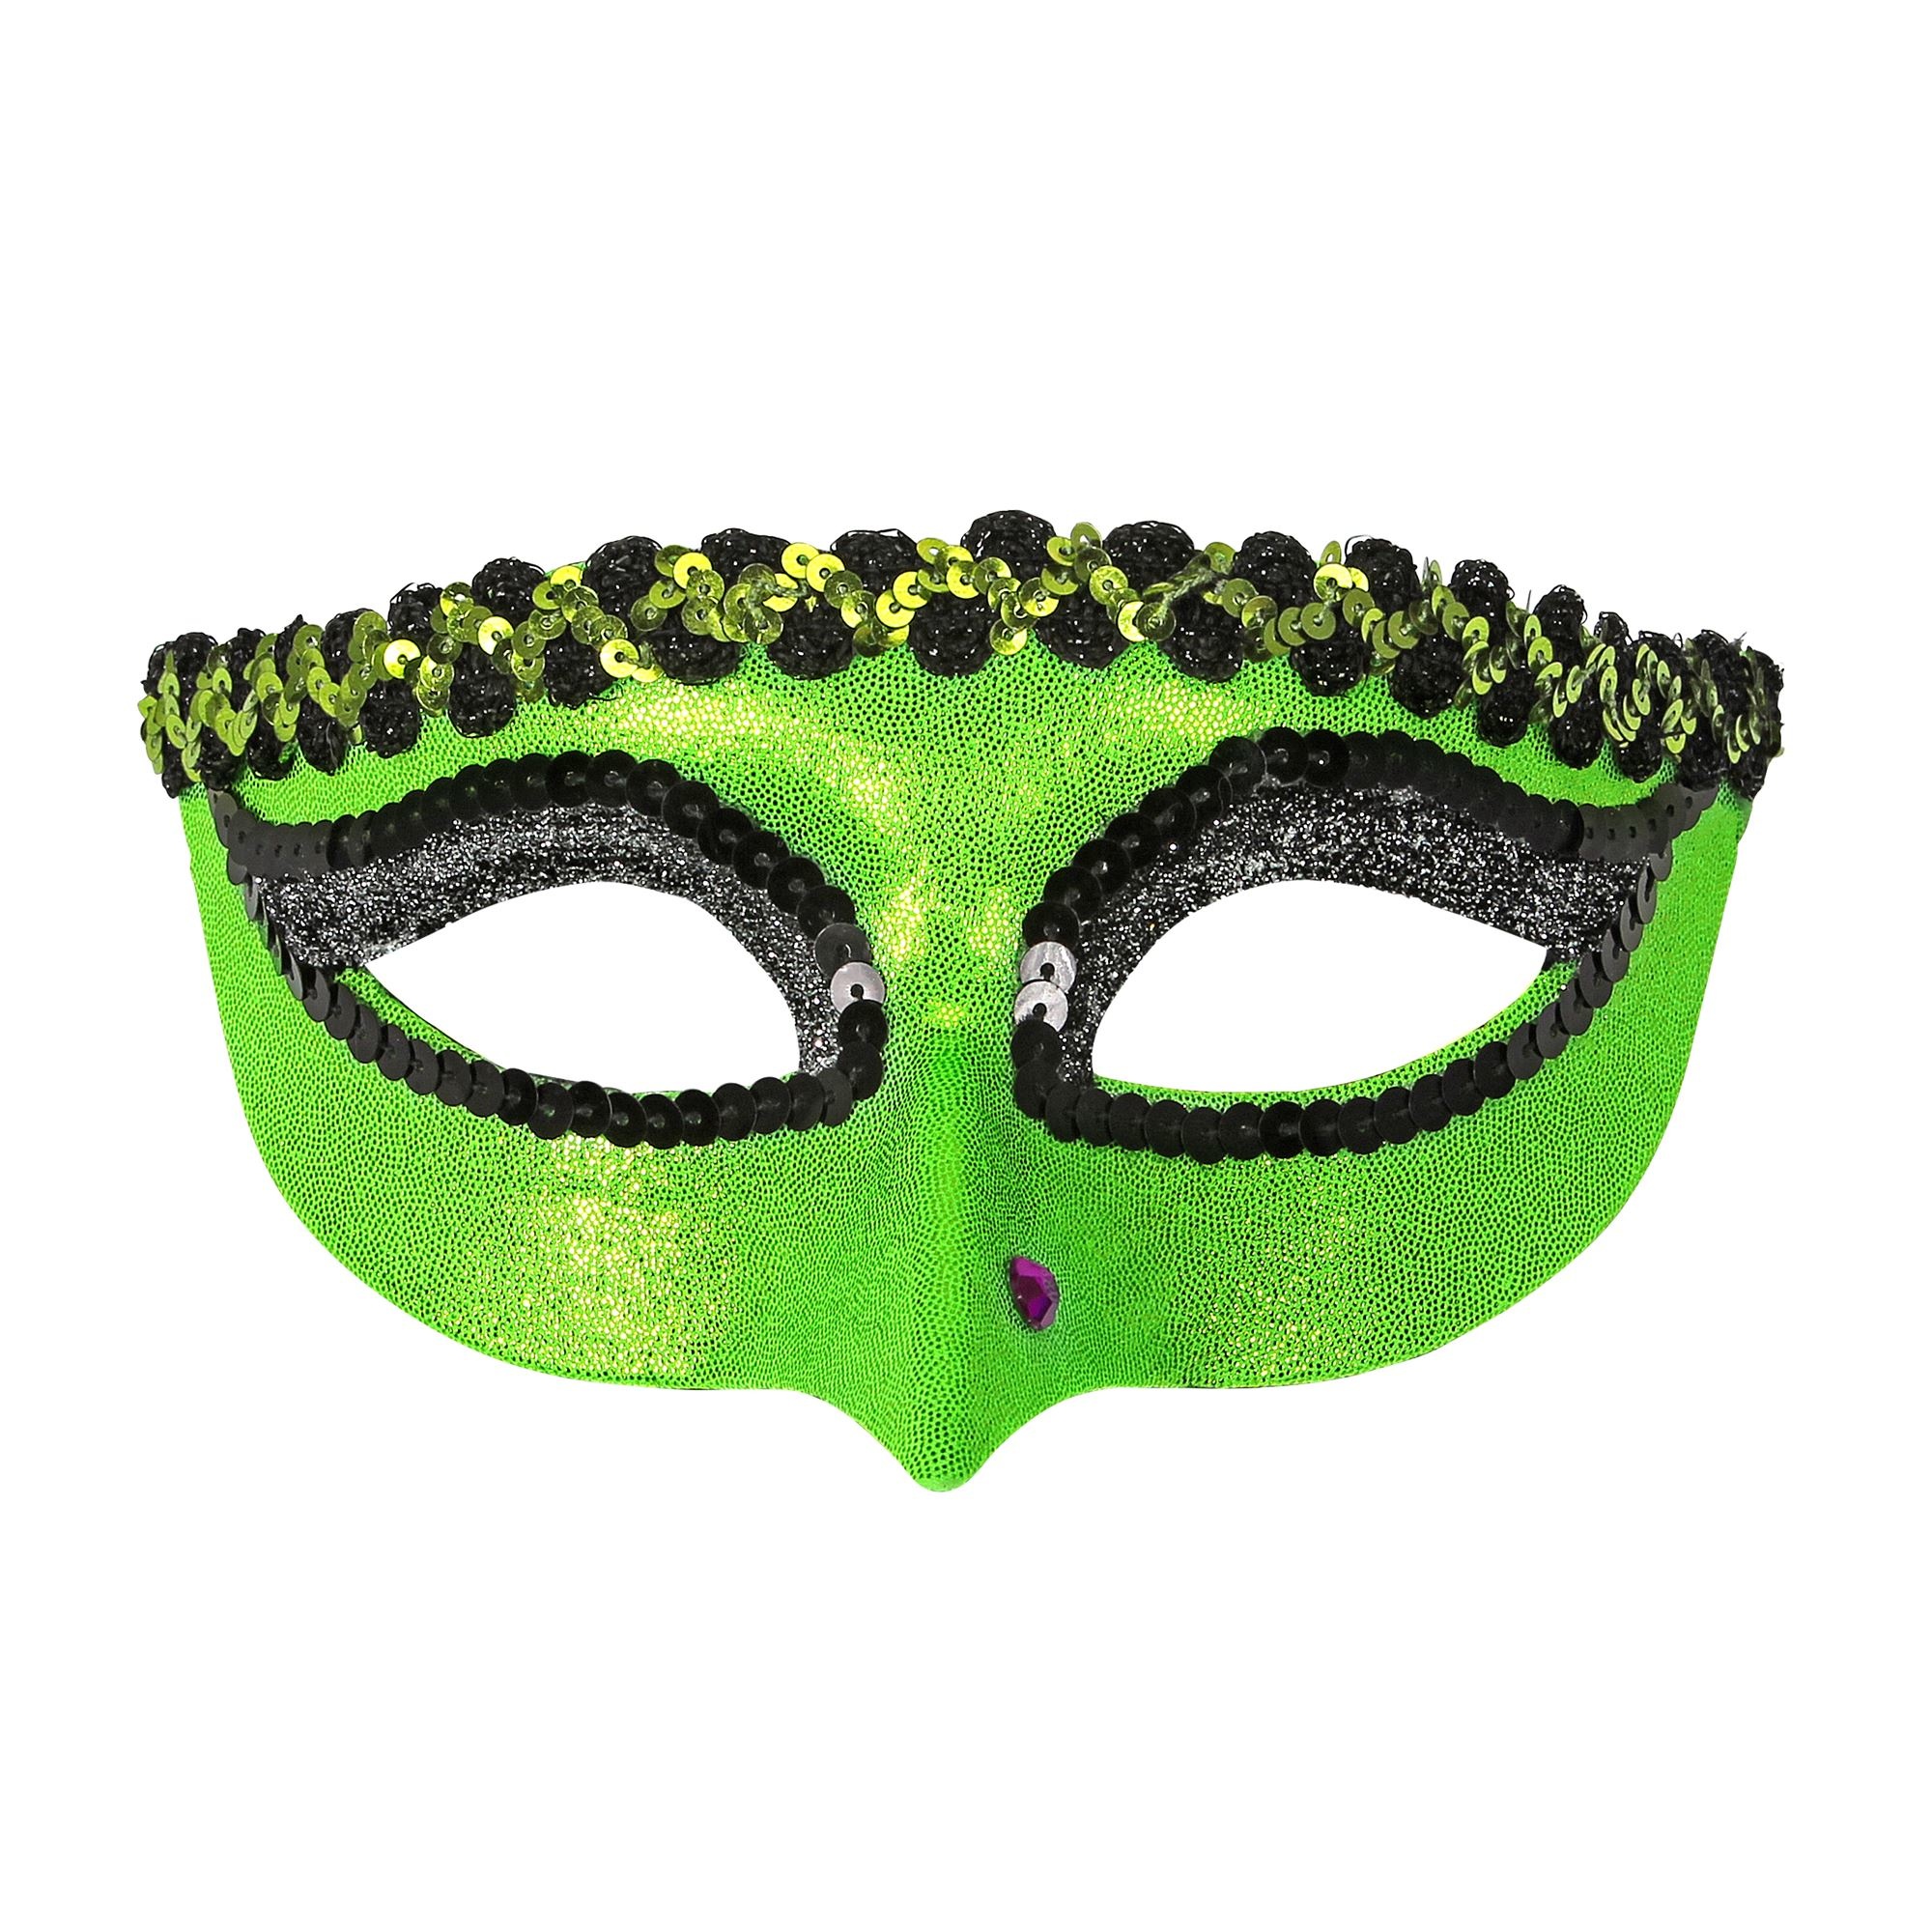 Heksen oogmasker groen met wrat